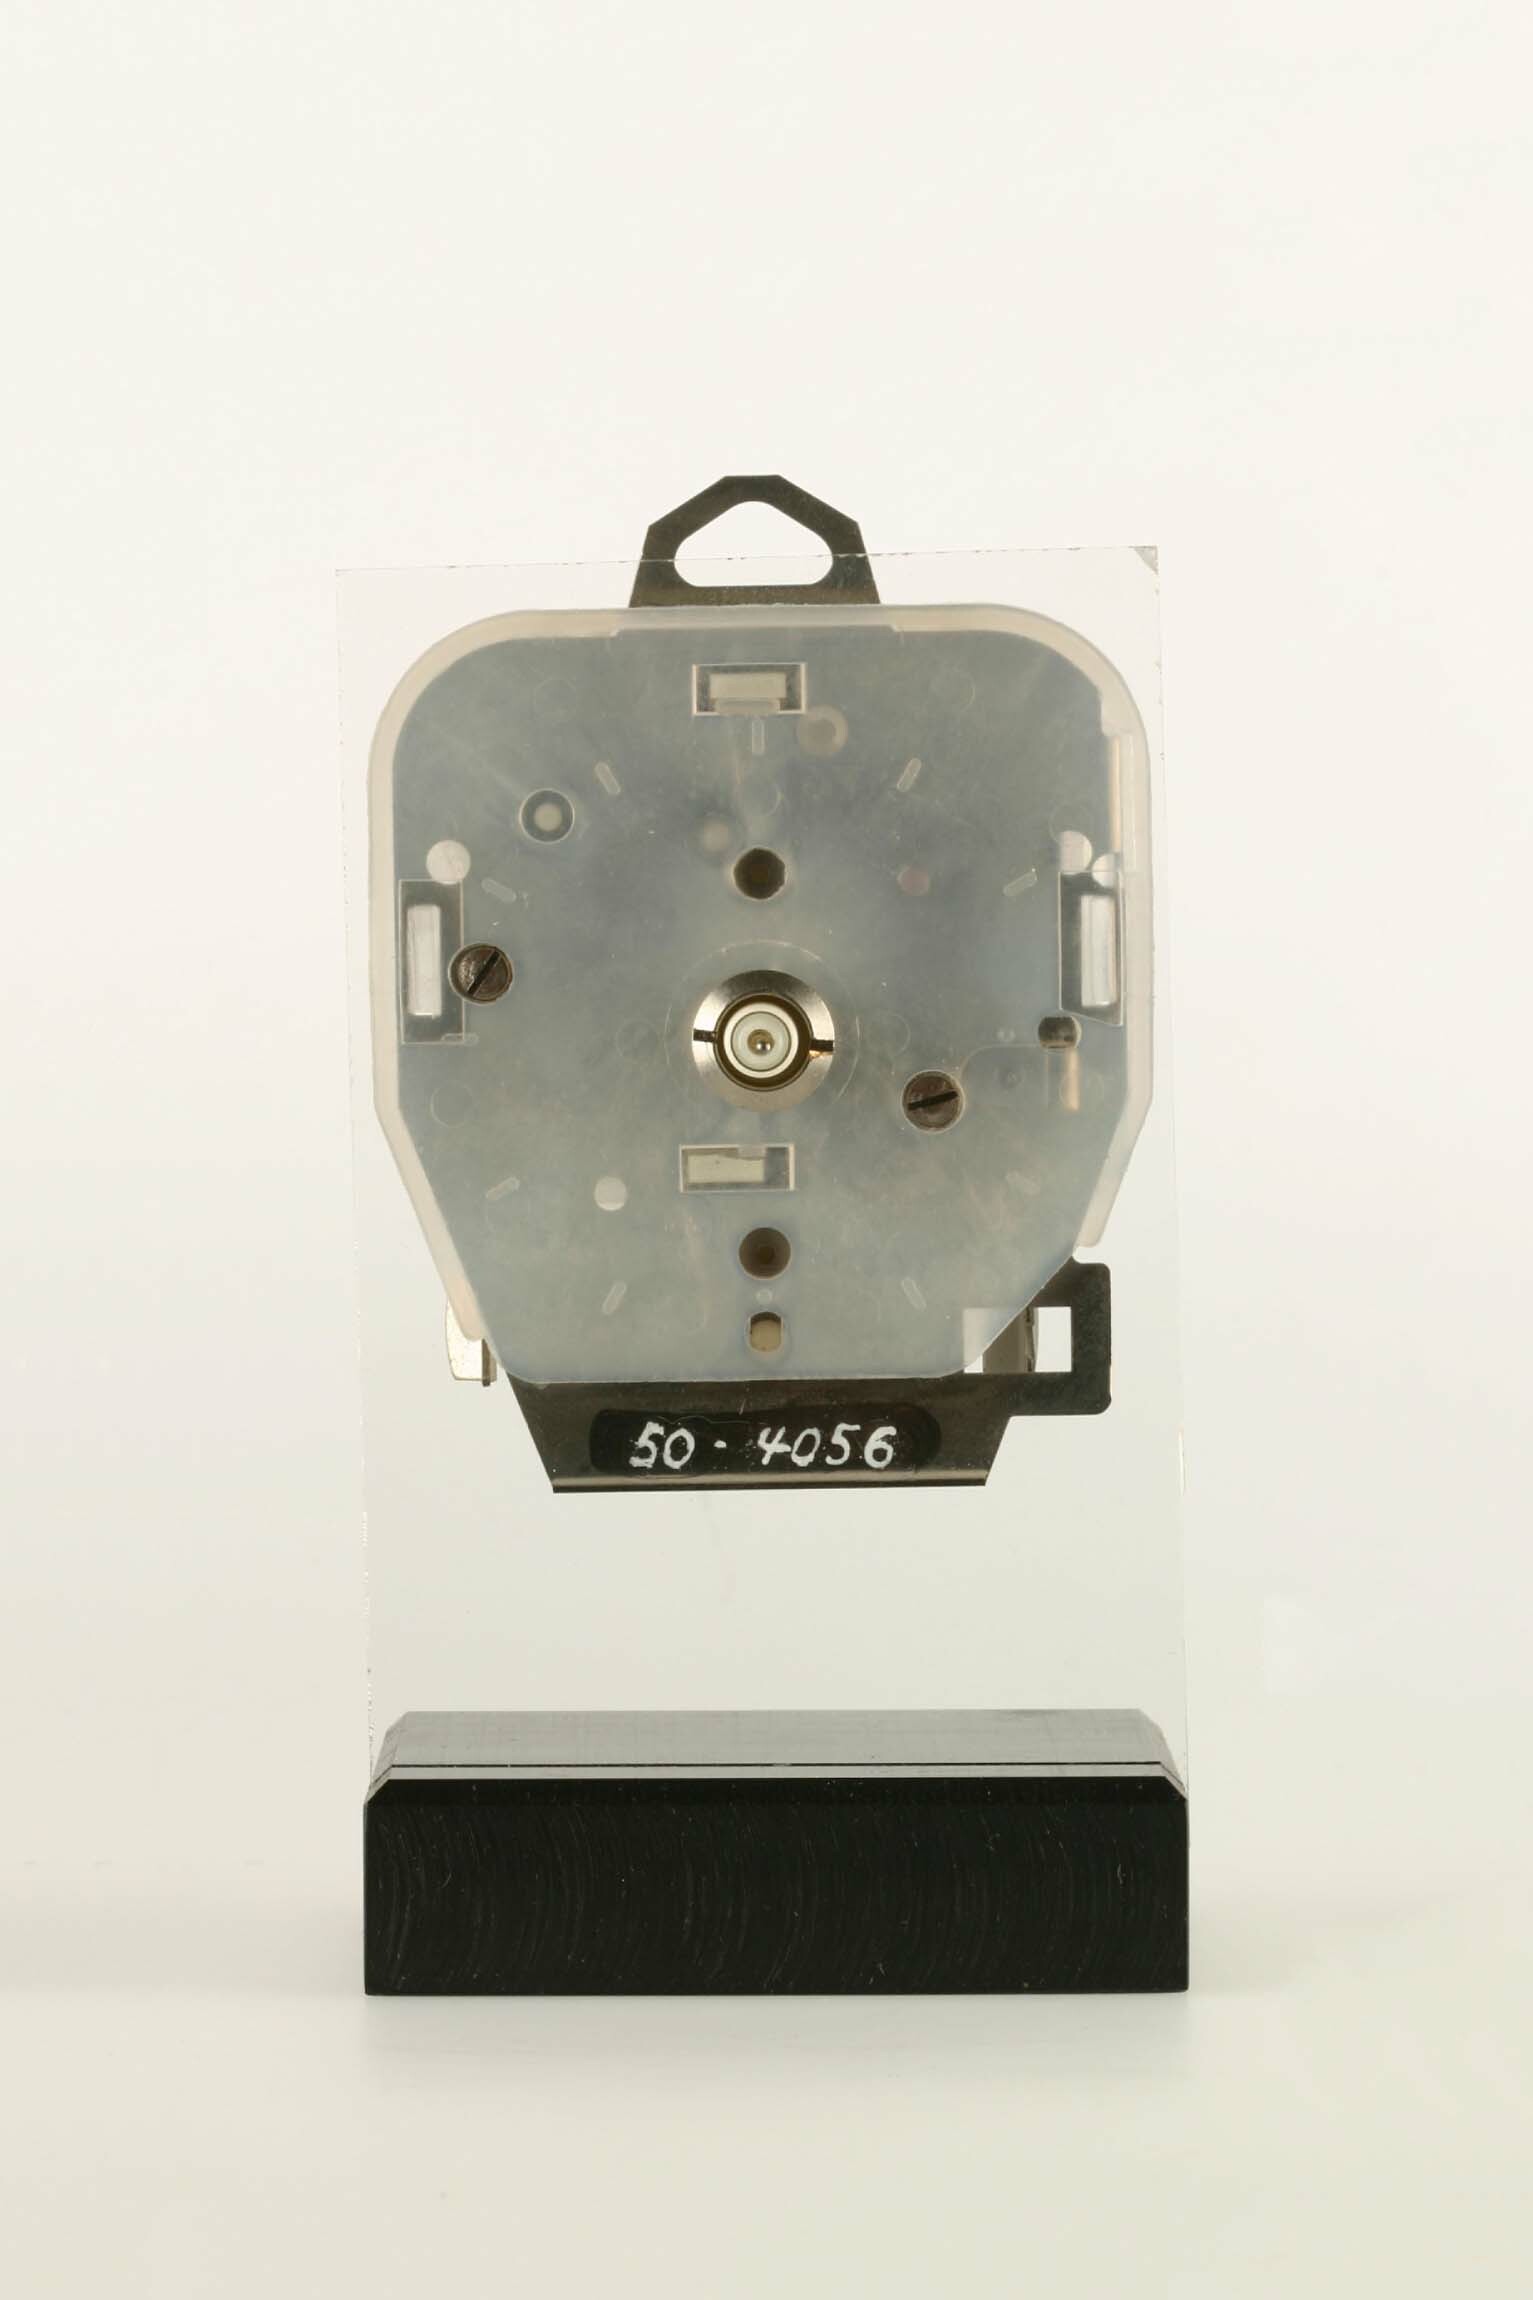 Uhrwerk, Staiger, St. Georgen, 1969 (Deutsches Uhrenmuseum CC BY-SA)